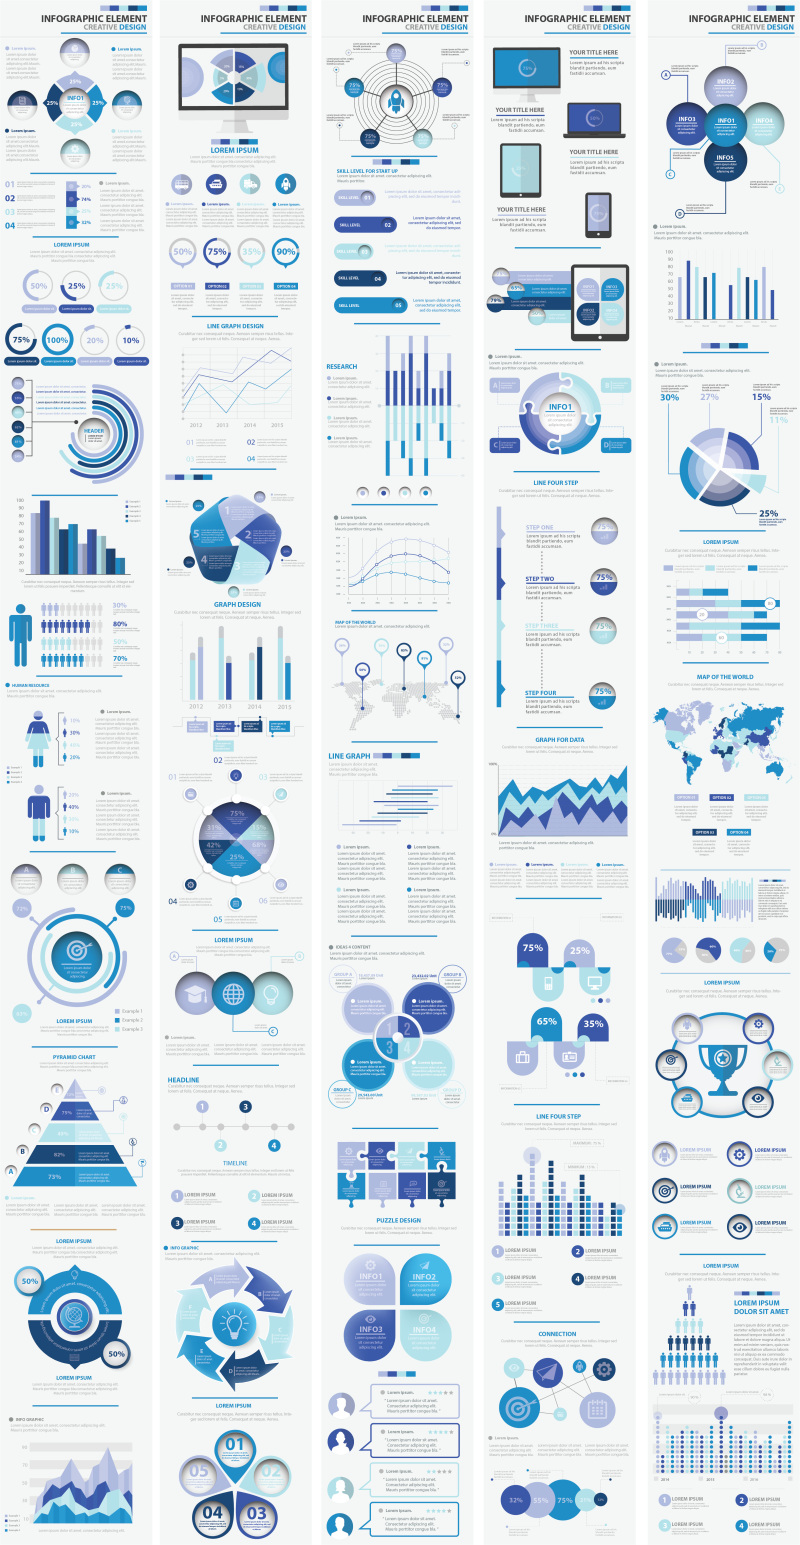 蓝色大信息图形元素设计方案Big Blue Infographic Elements Design Scheme V.5